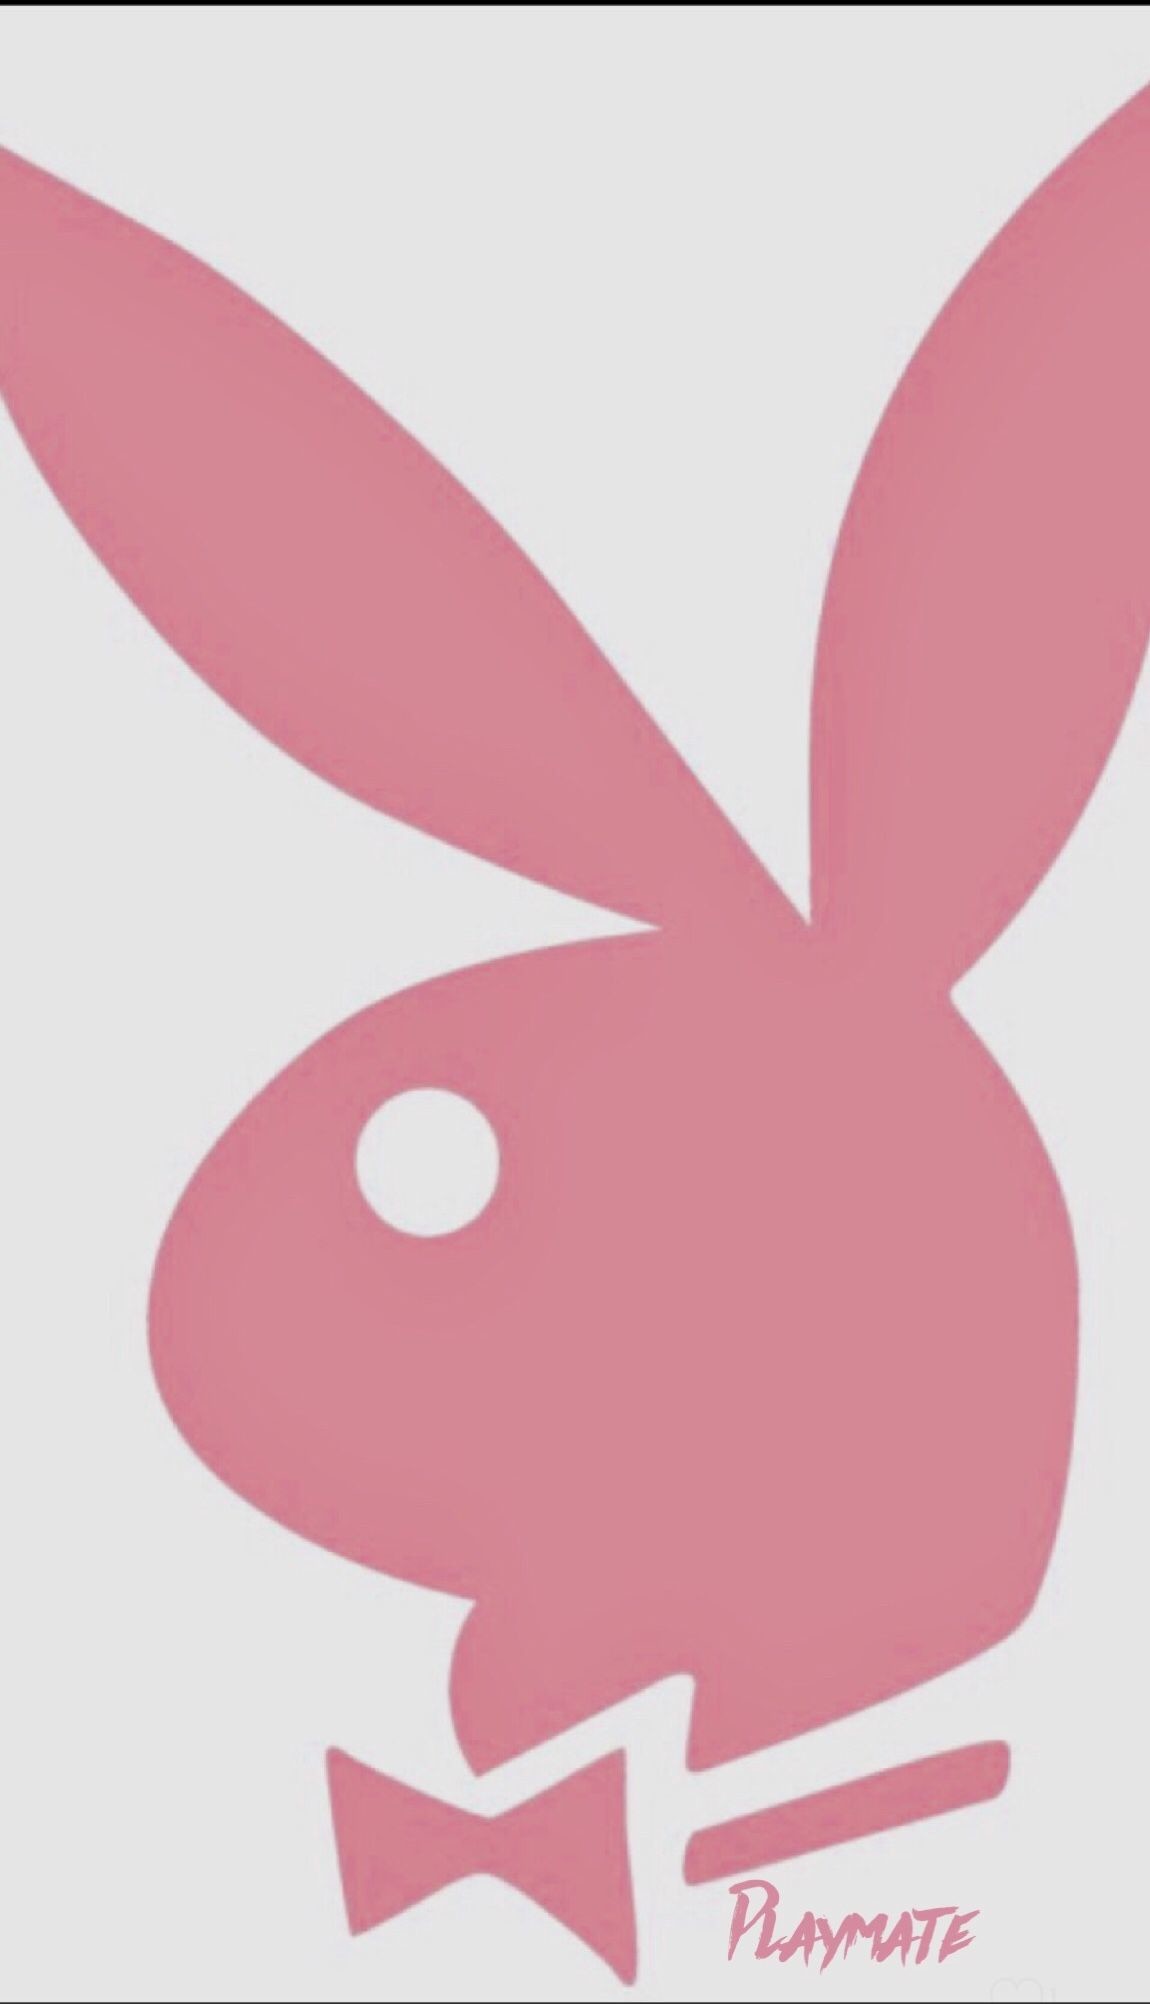 #playboy #playmate #playboybunny #blushpink #fondos - Rabbit Playboy Bunny Logo - HD Wallpaper 